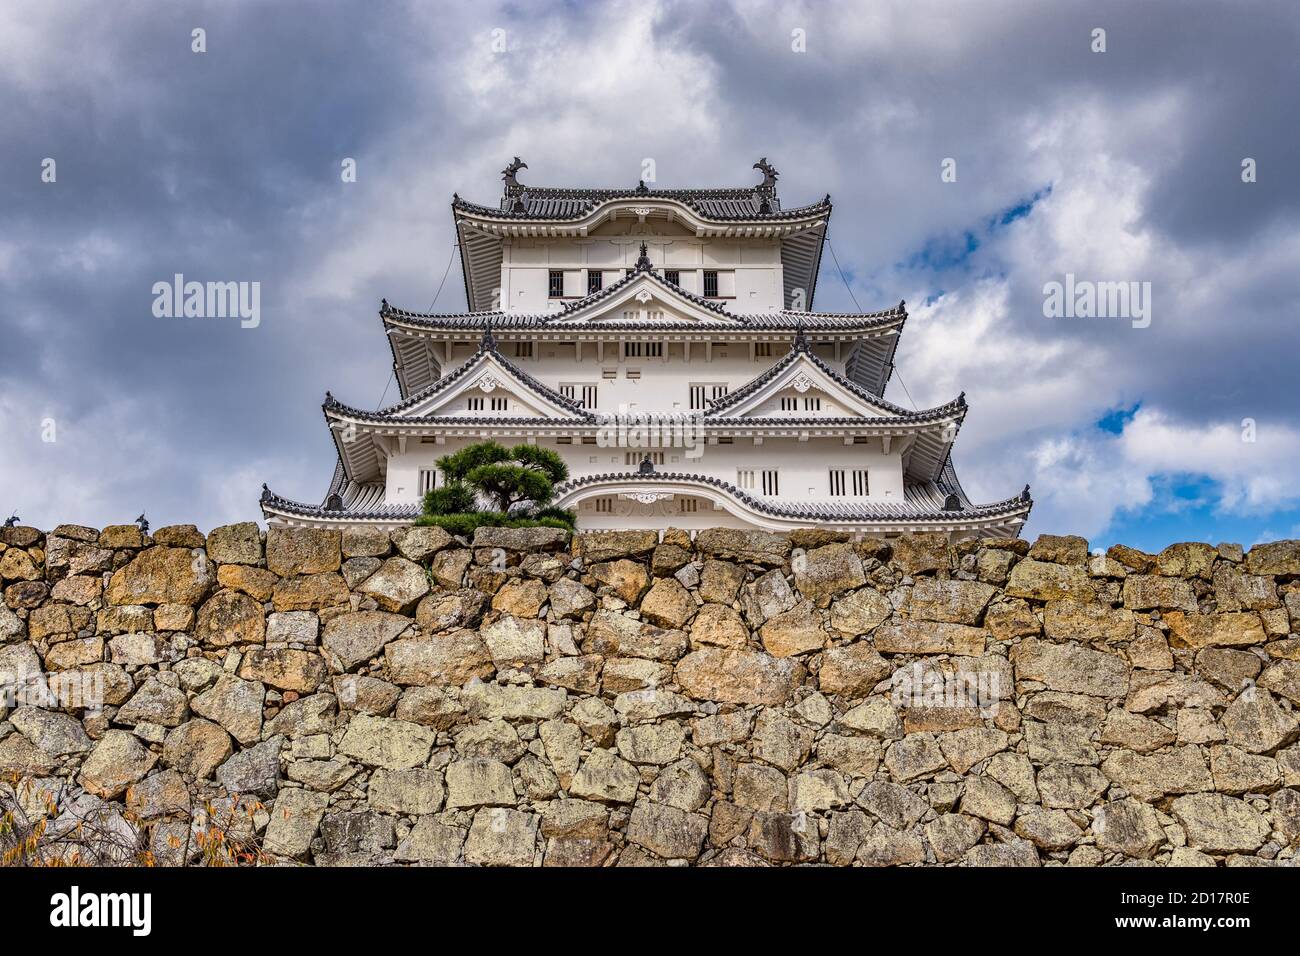 Magnifique château Himeji dans la ville Himeji dans la préfecture de Hyogo La région de Kansai au Japon Banque D'Images